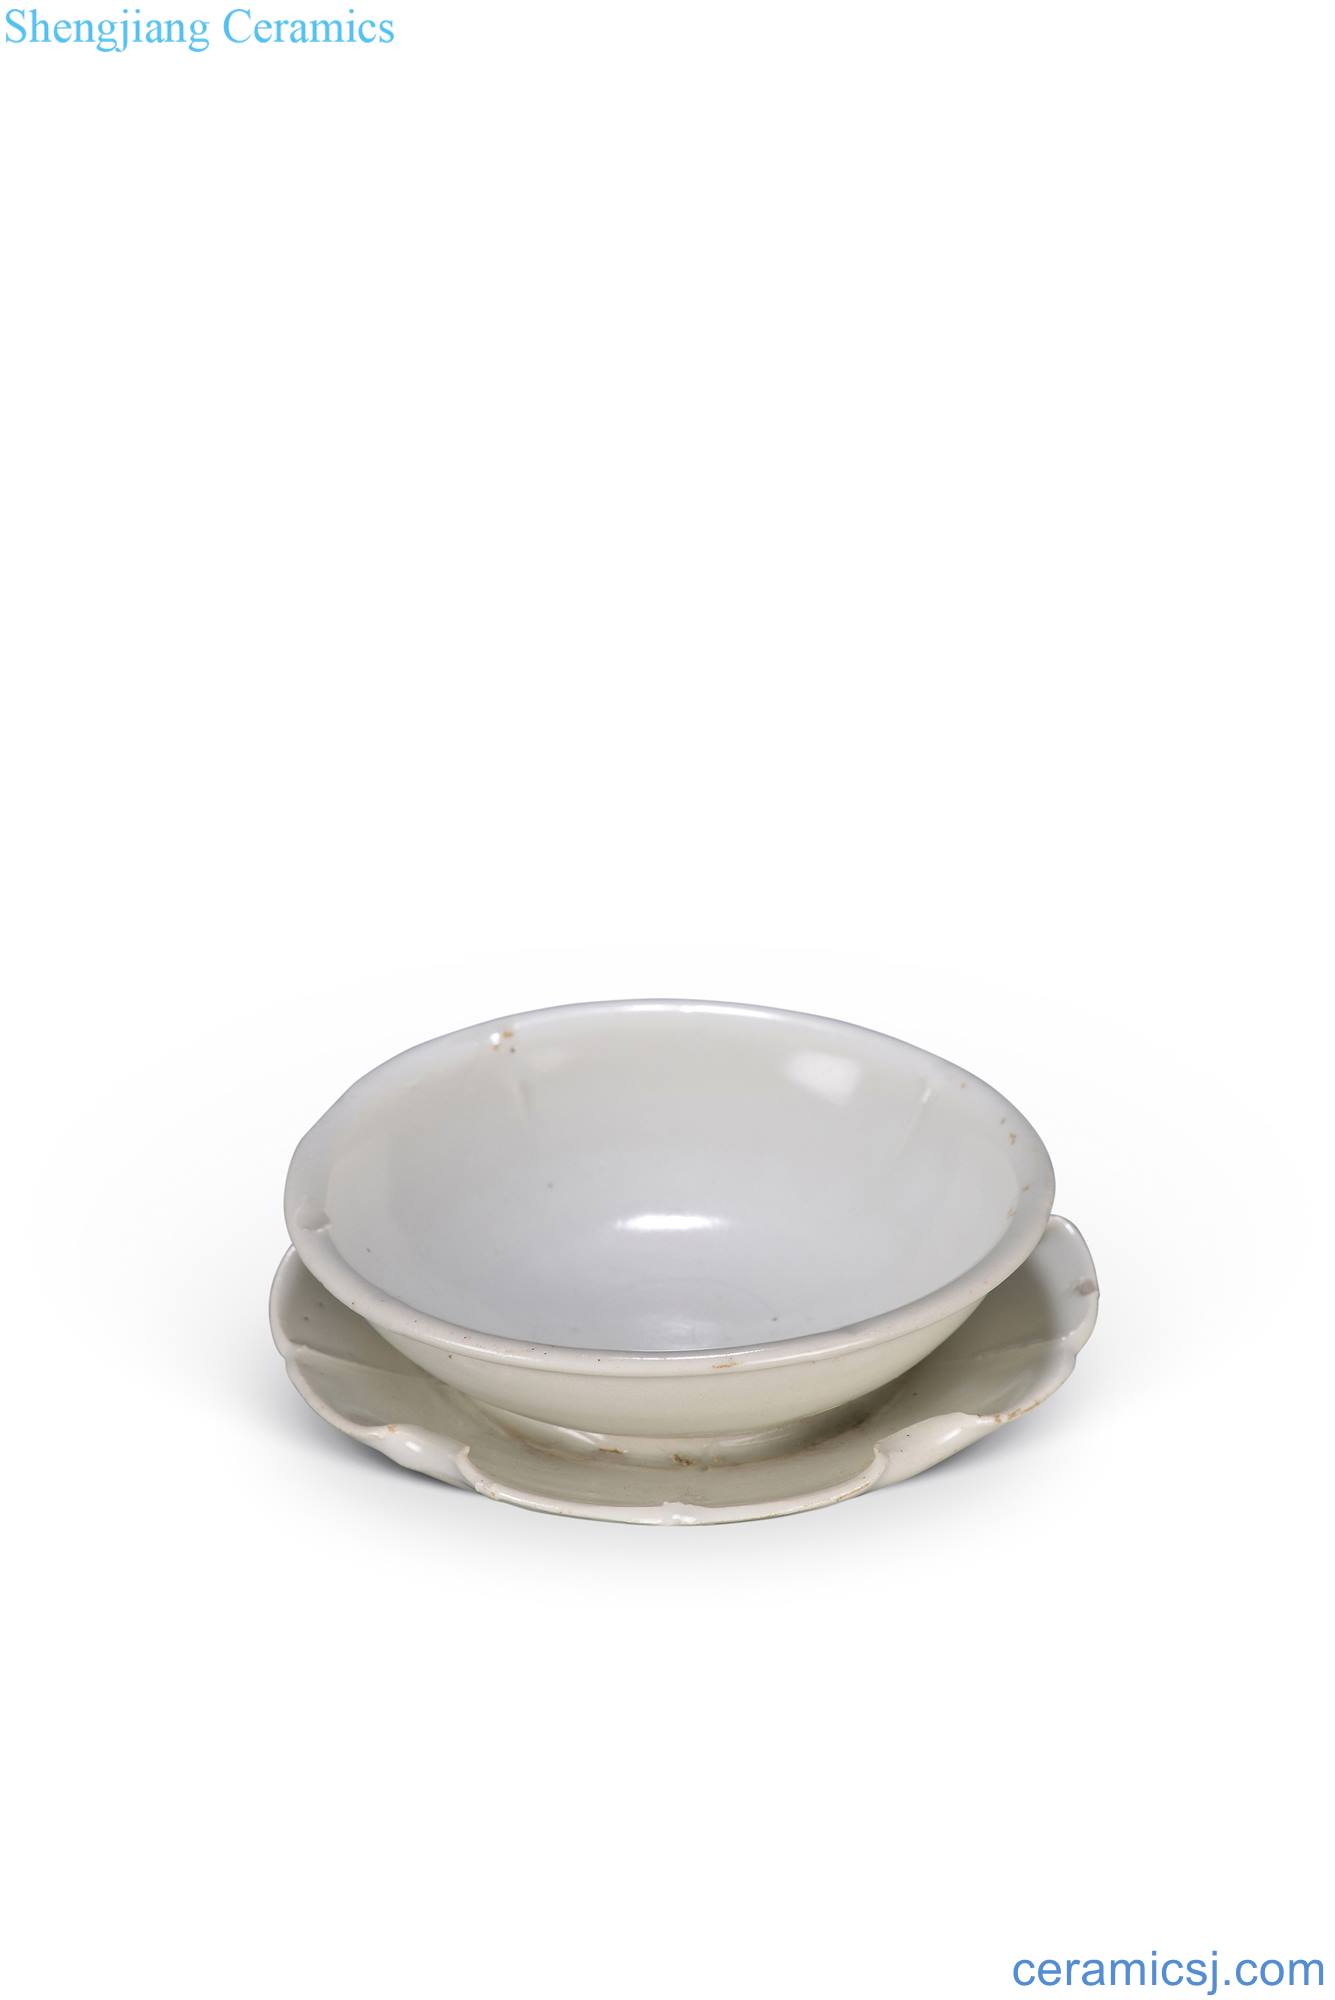 yuan Xing kiln white glazed bowl, Joe